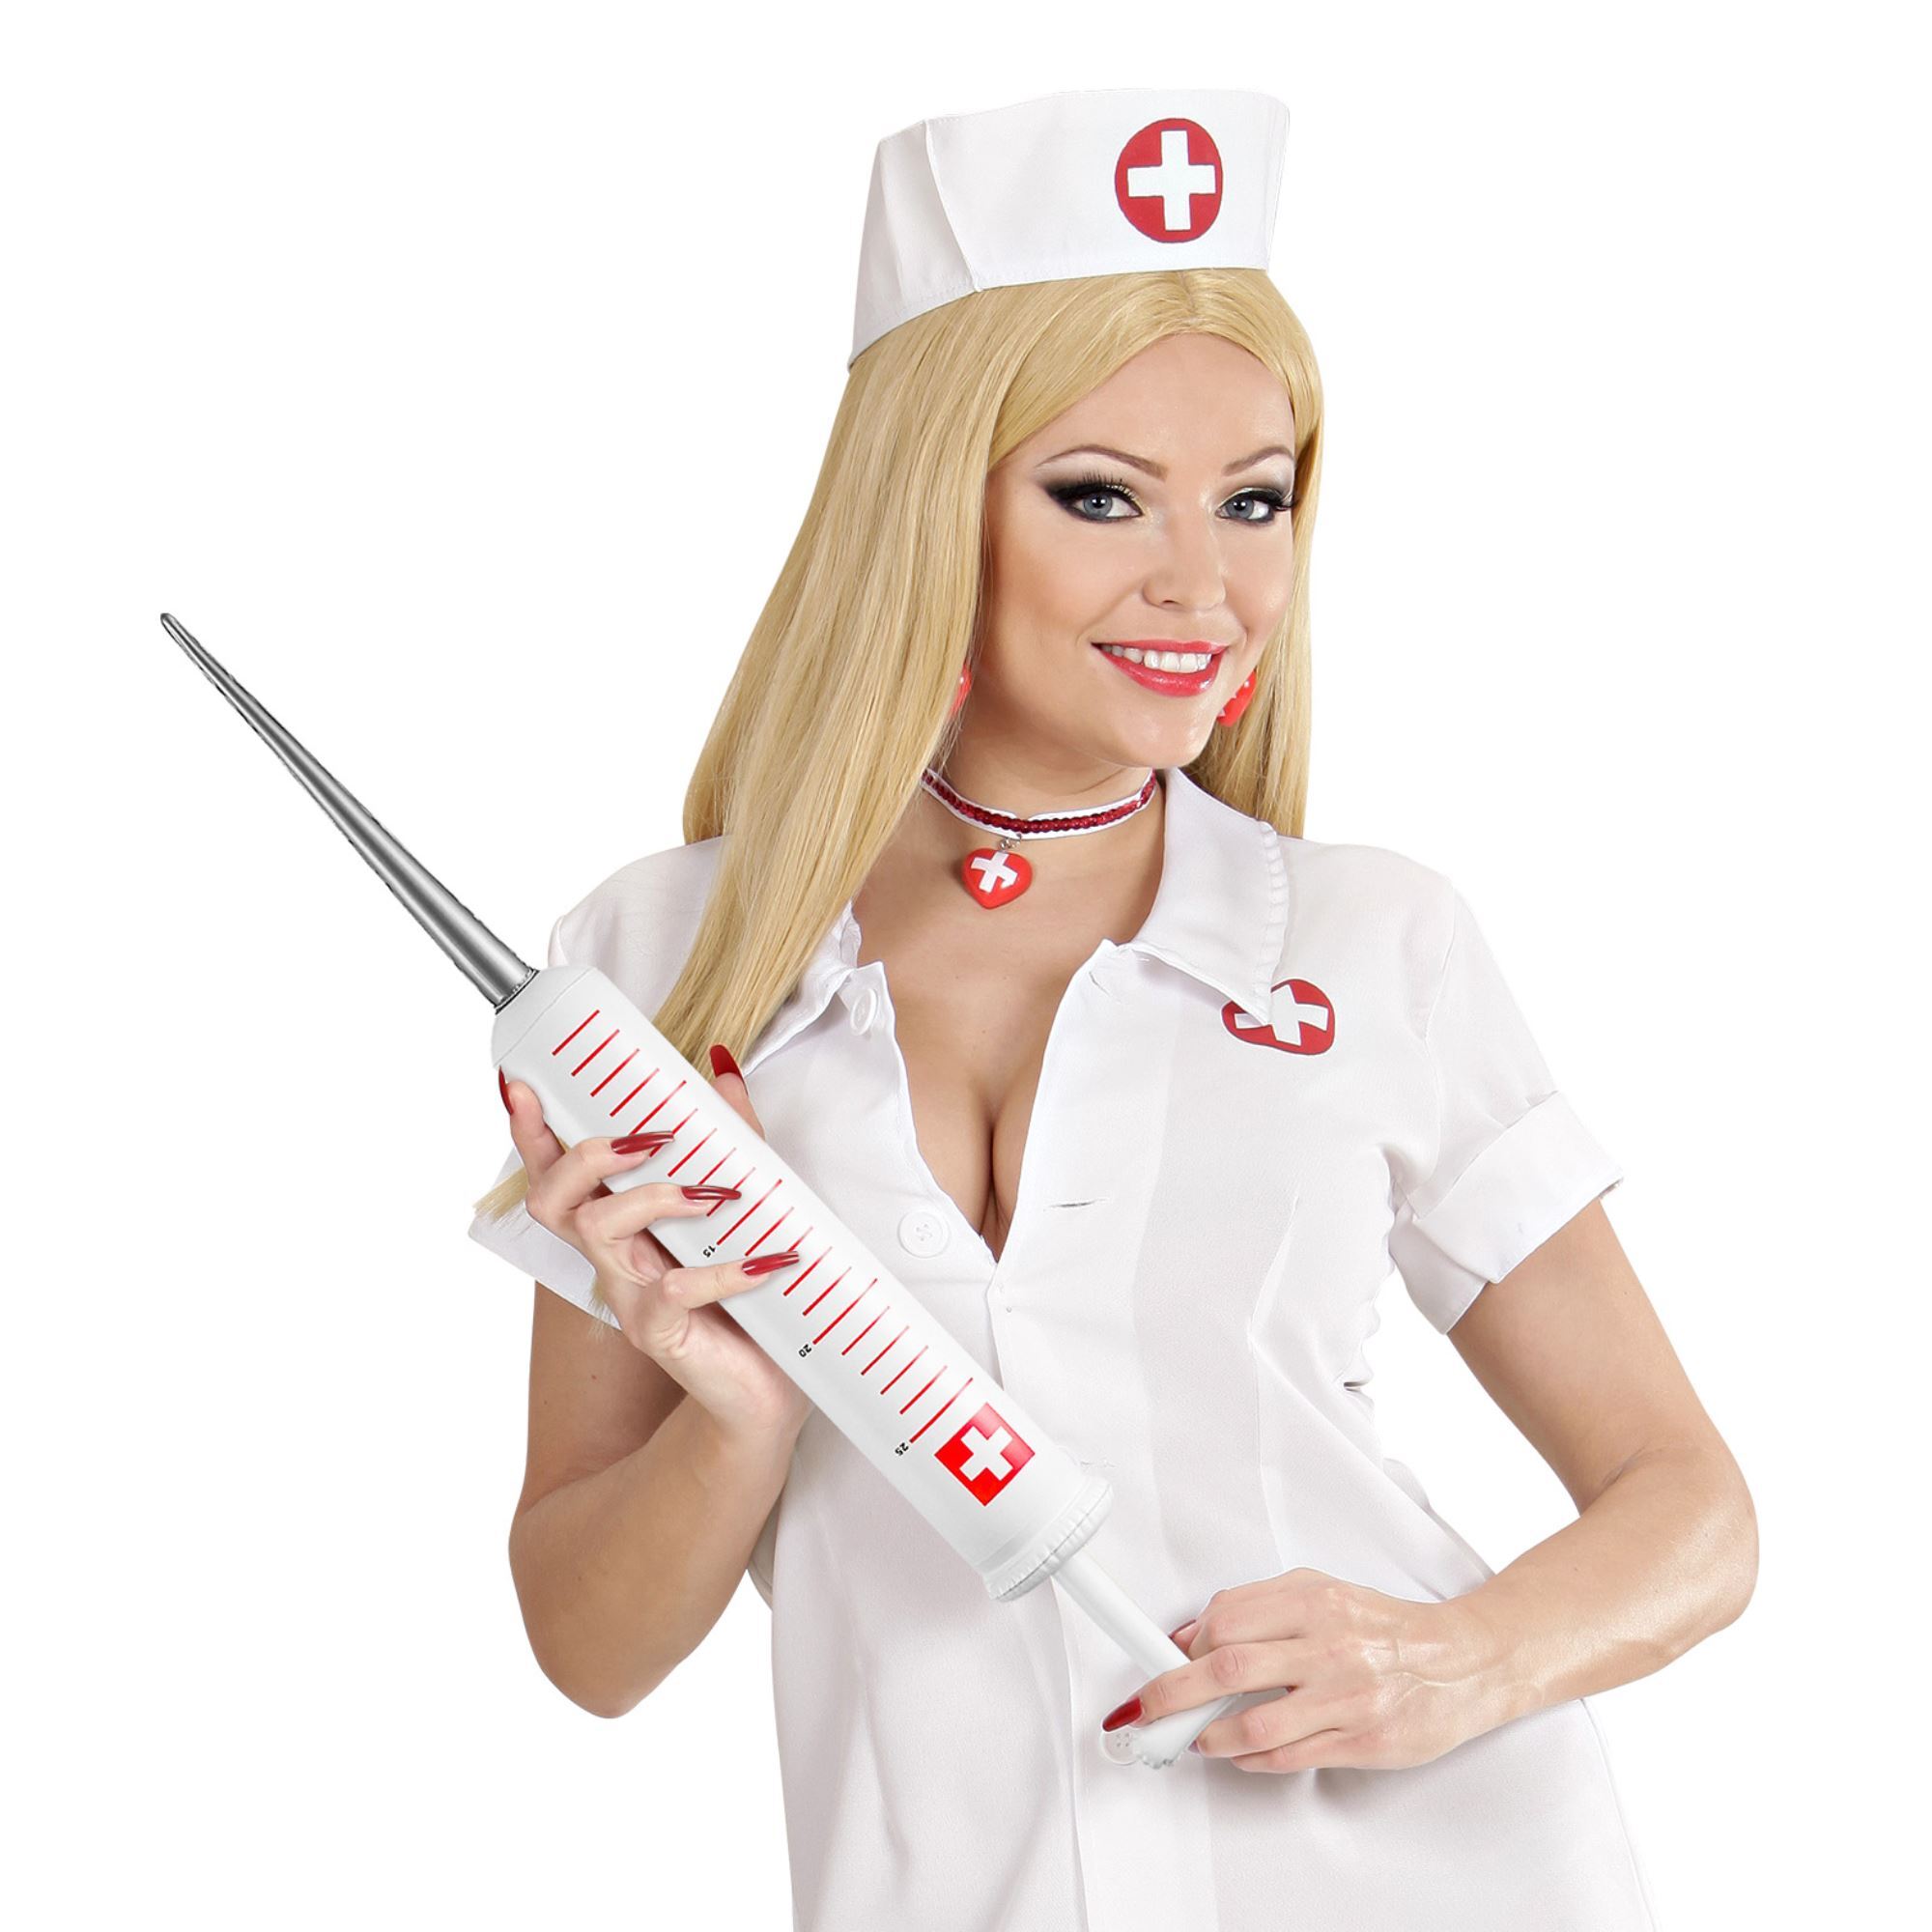 Медсестра красивое видео